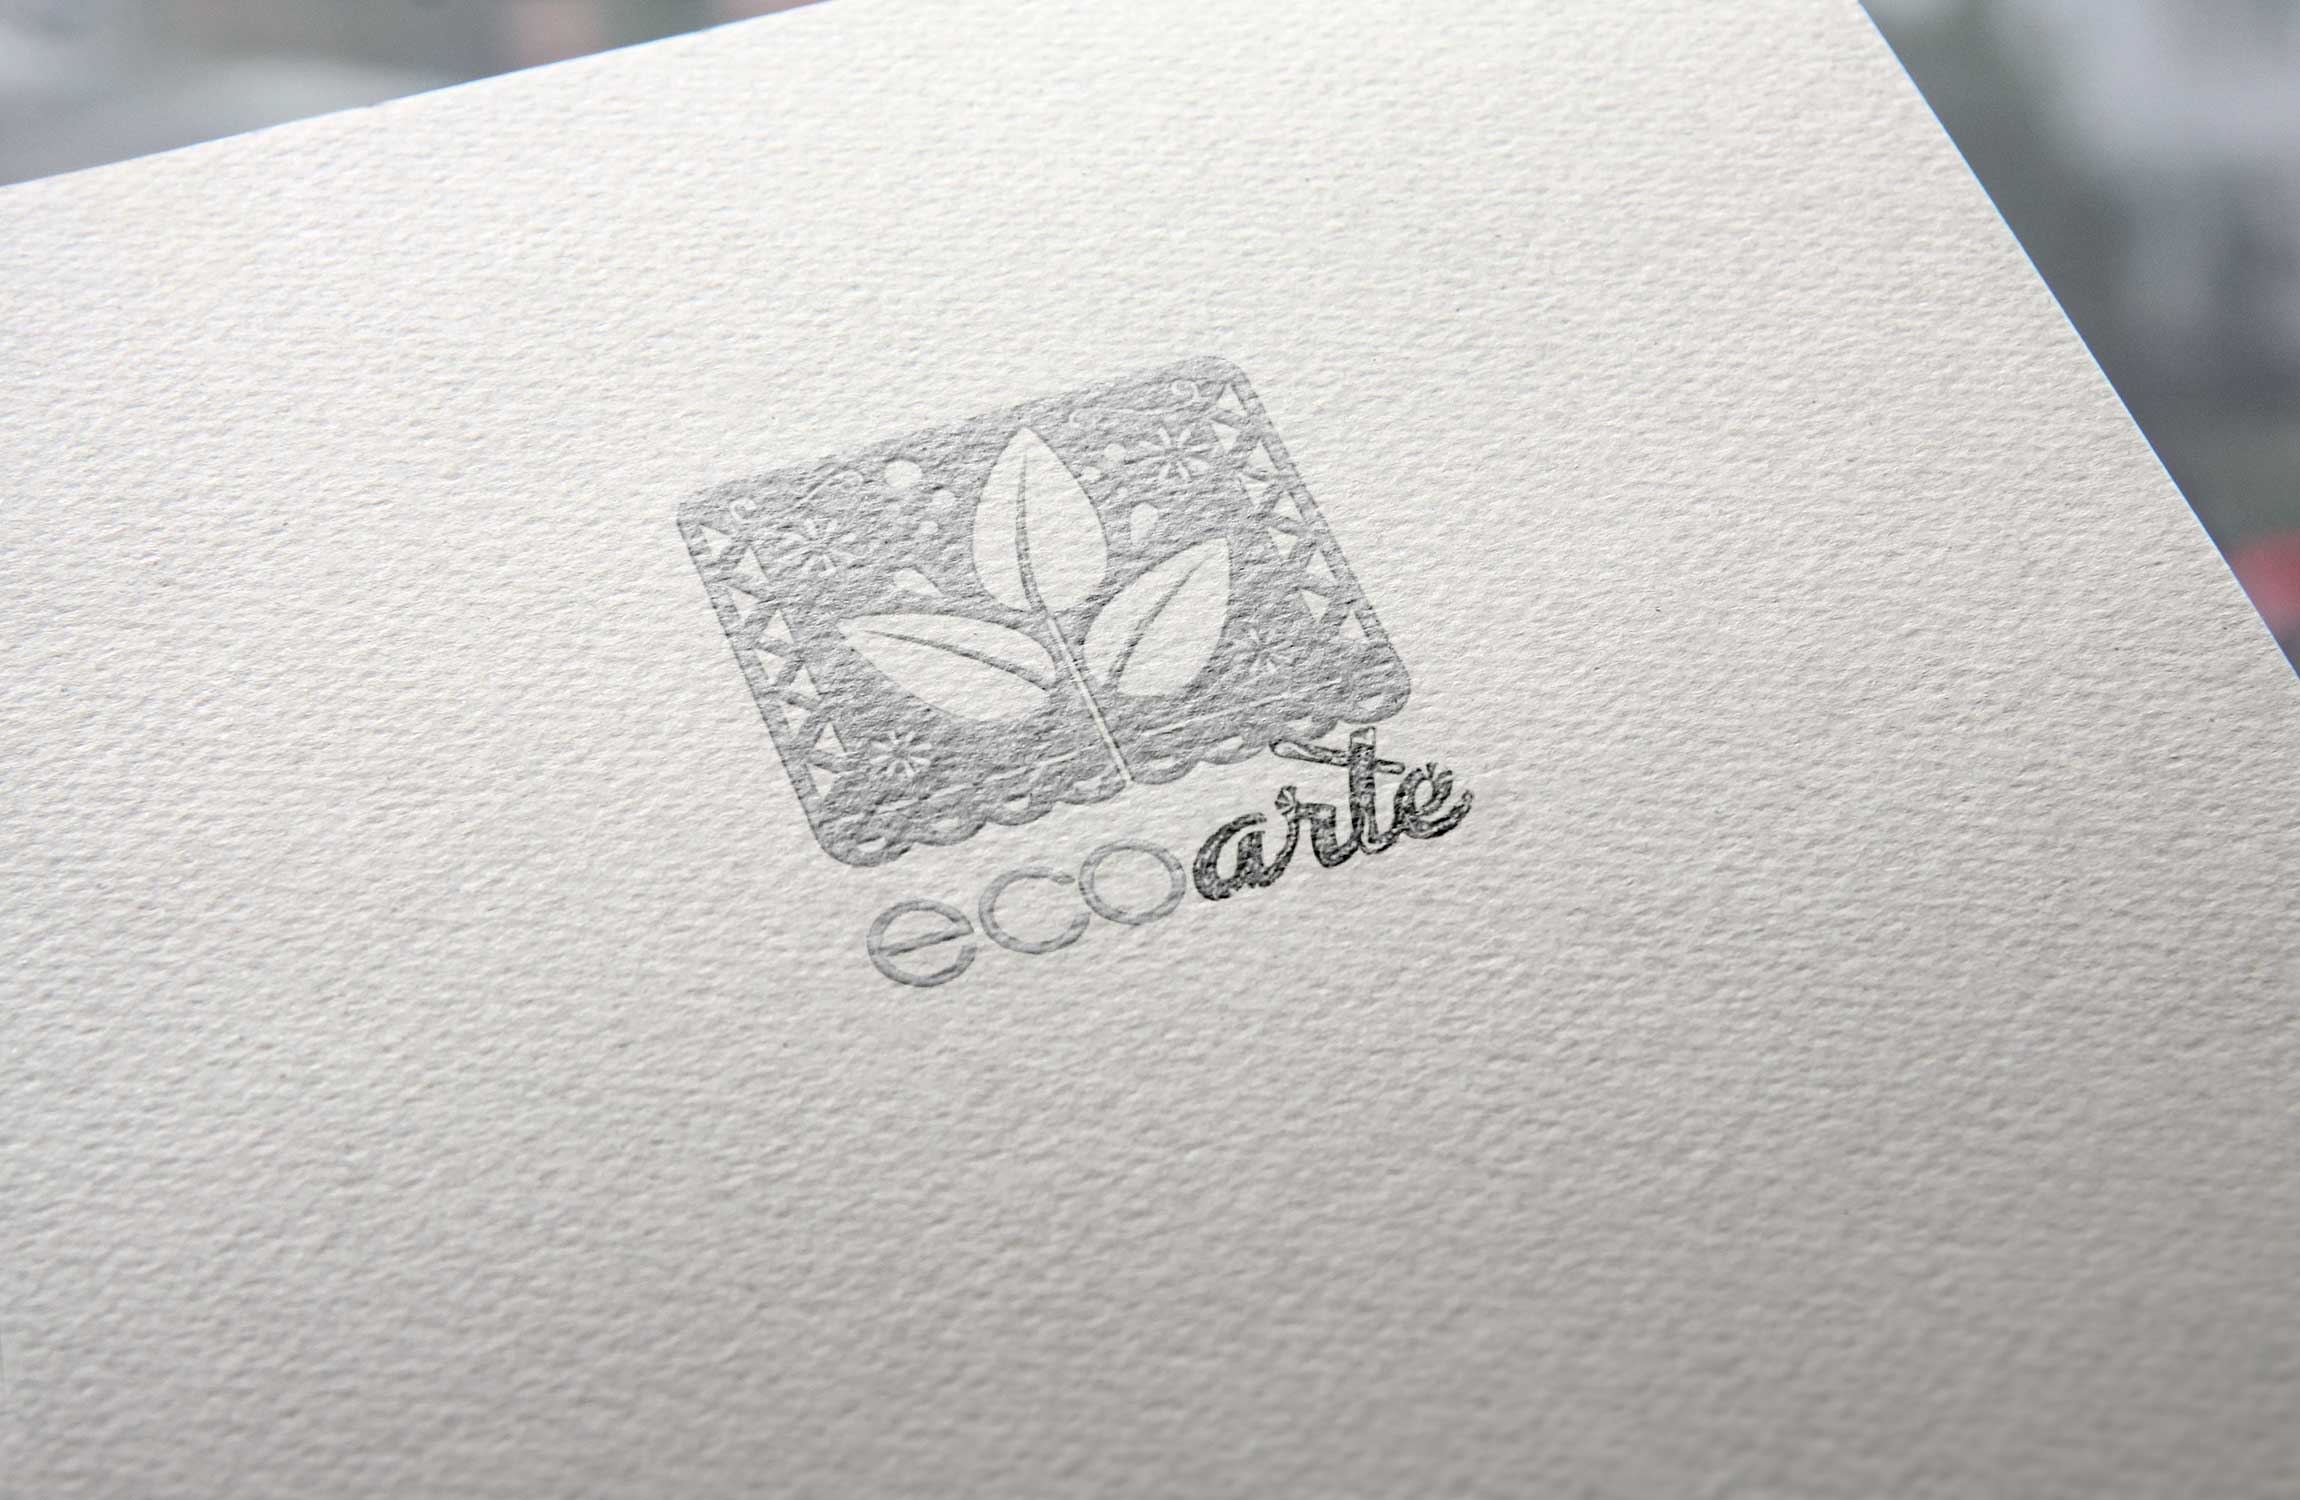 Diseño gráfico imagotipo logotipo logos Ecoarte papel picado